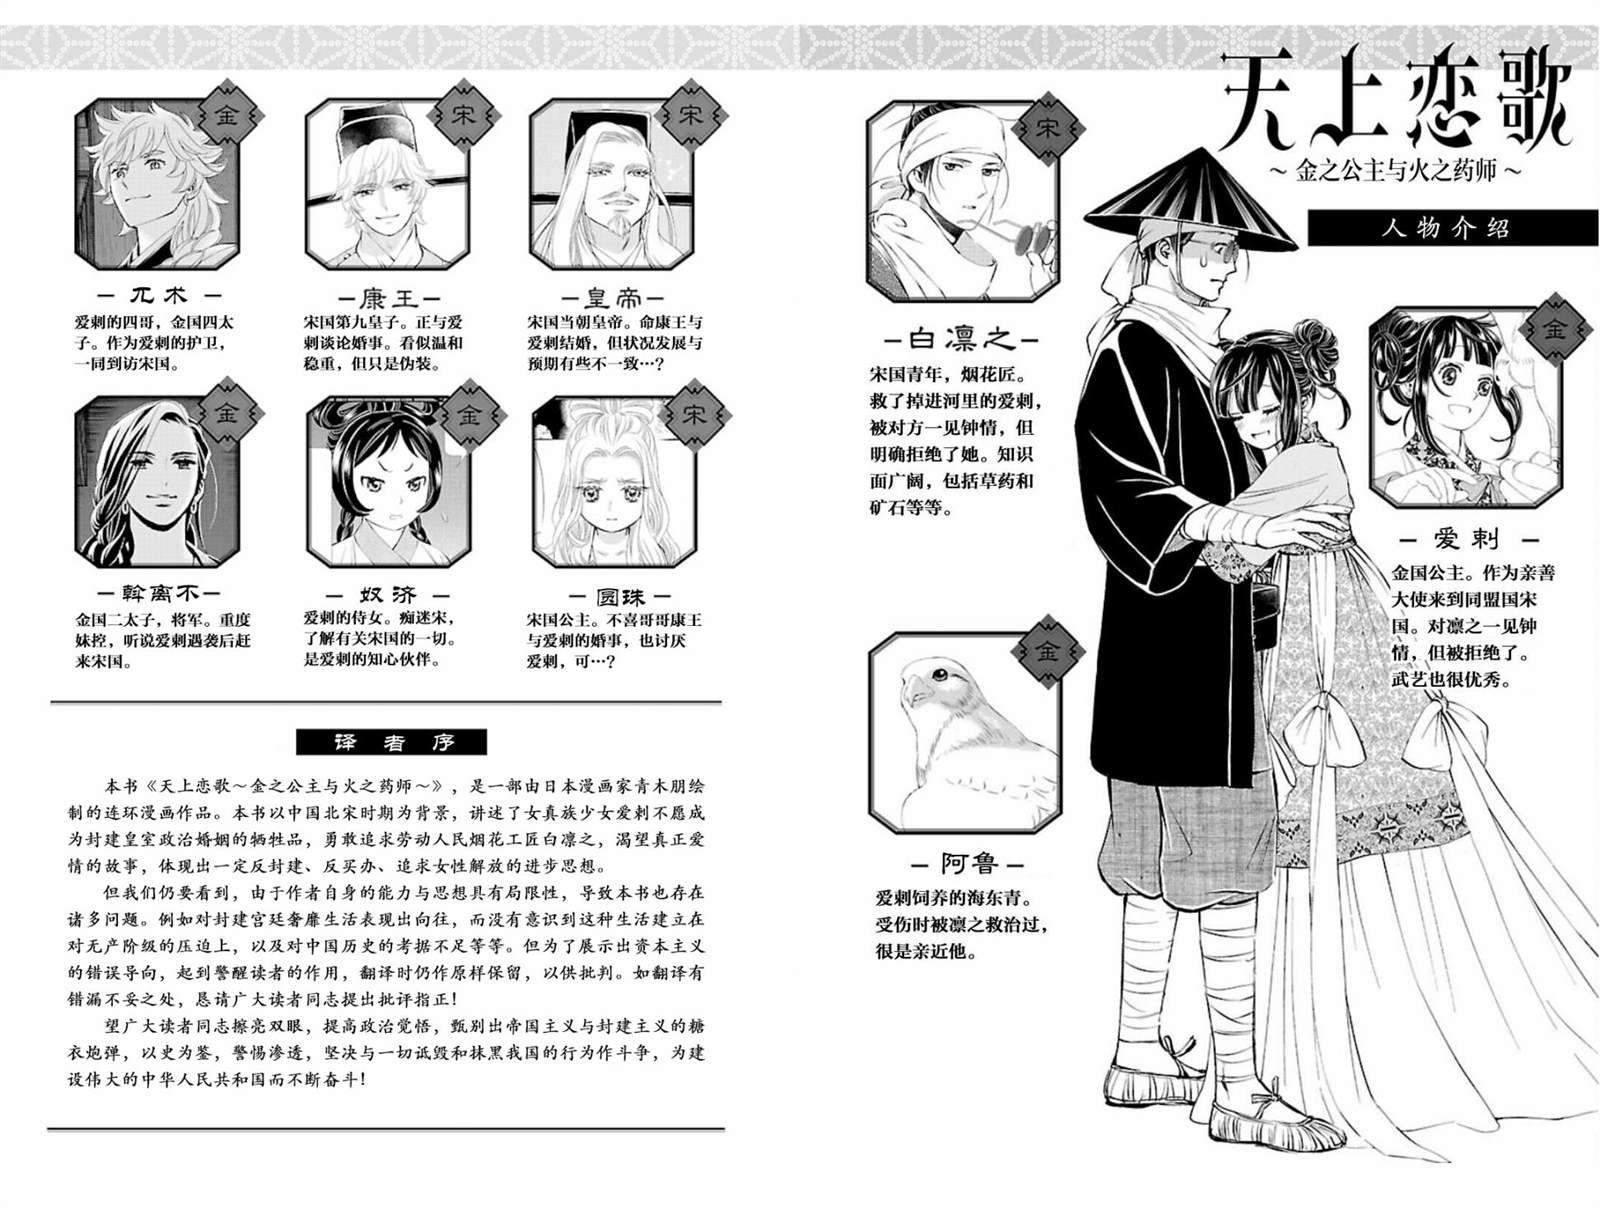 天上恋歌~金之公主与火之药师~漫画,第2话1图